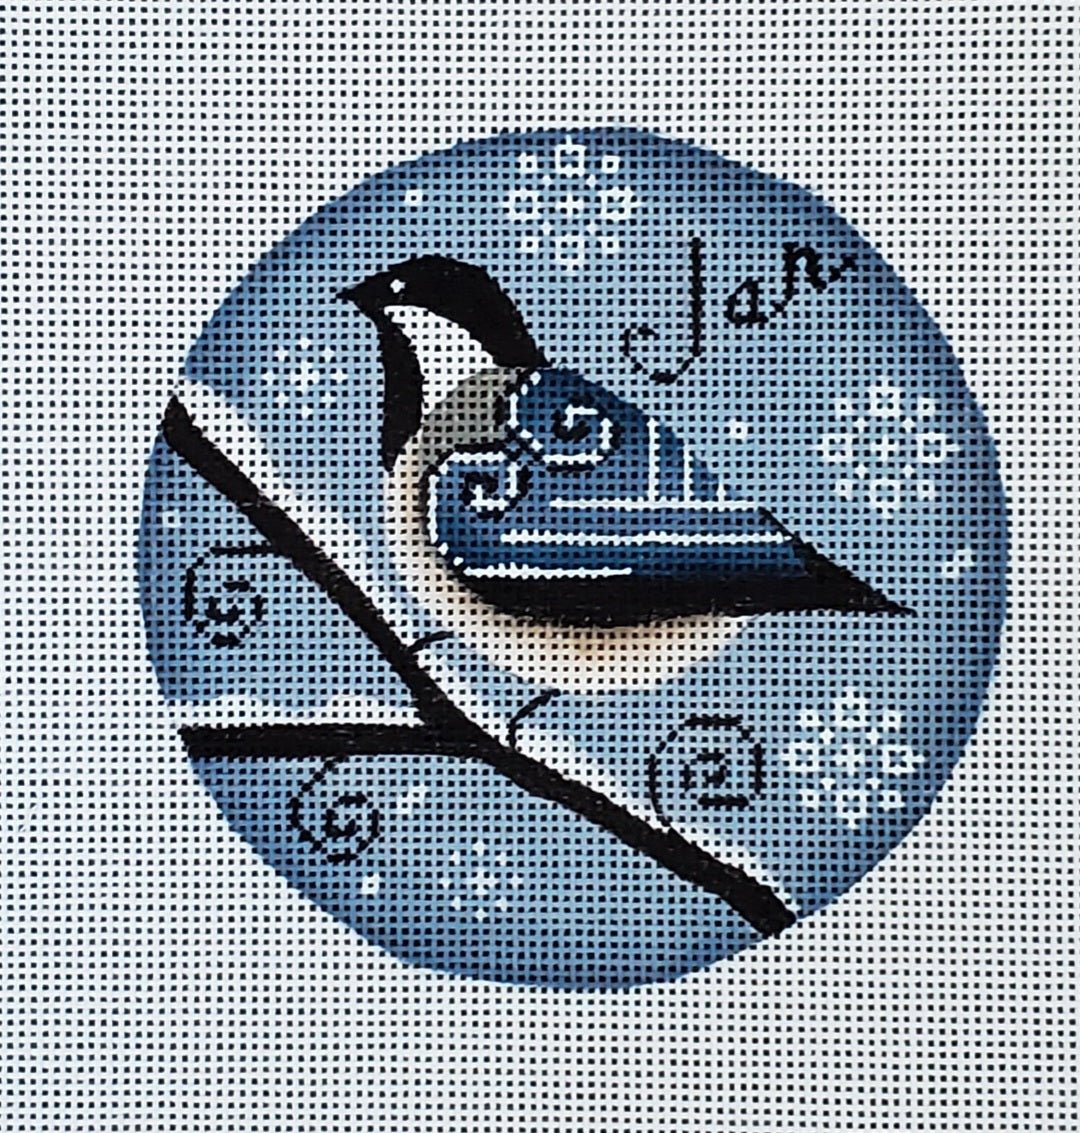 January Bird - The Flying Needles